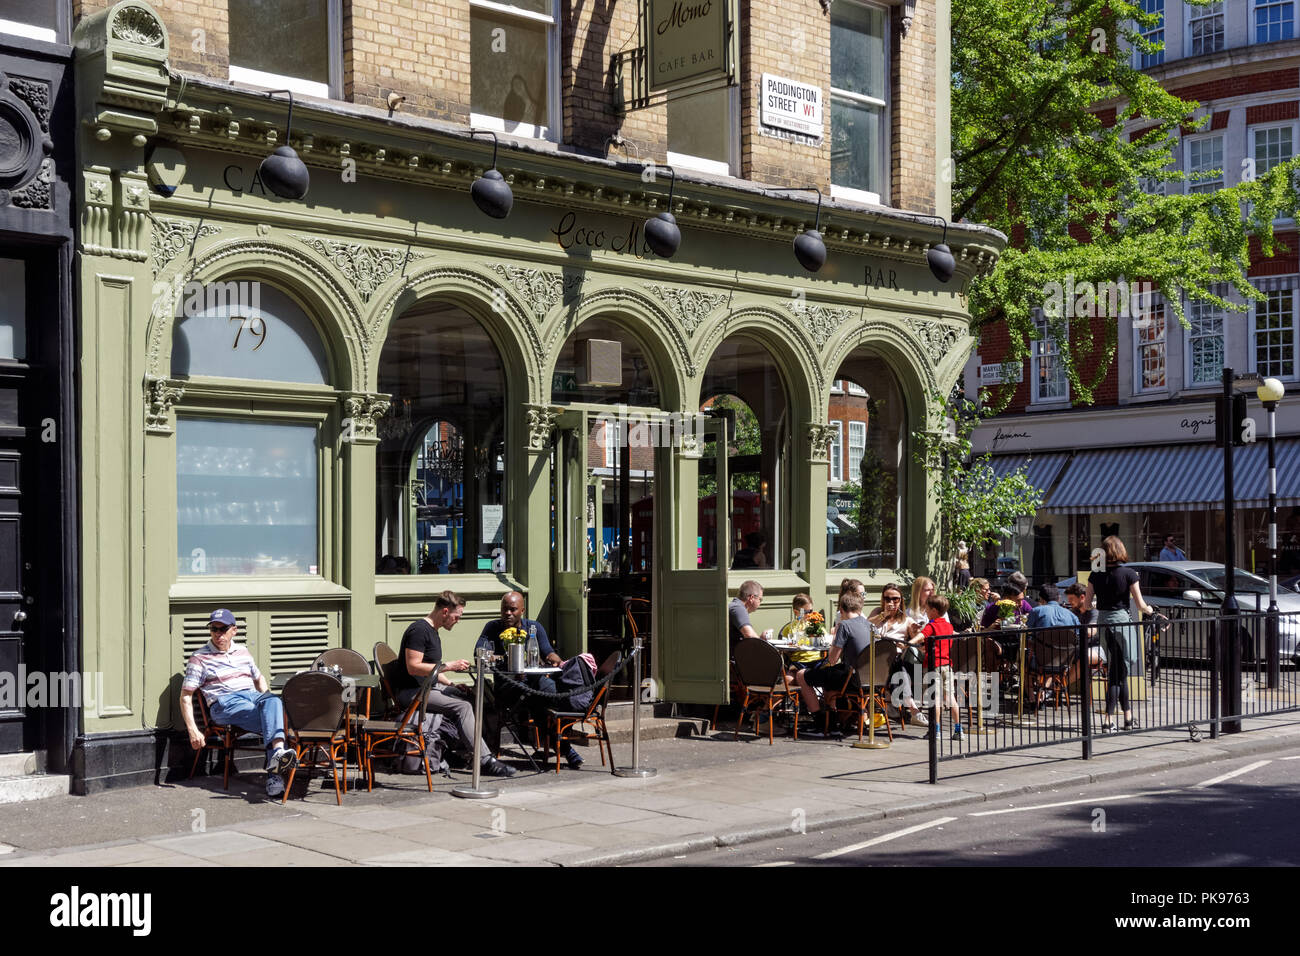 Gente sentada fuera de Coco restaurante Momo en Marylebone, Londres, Inglaterra, Reino Unido Foto de stock